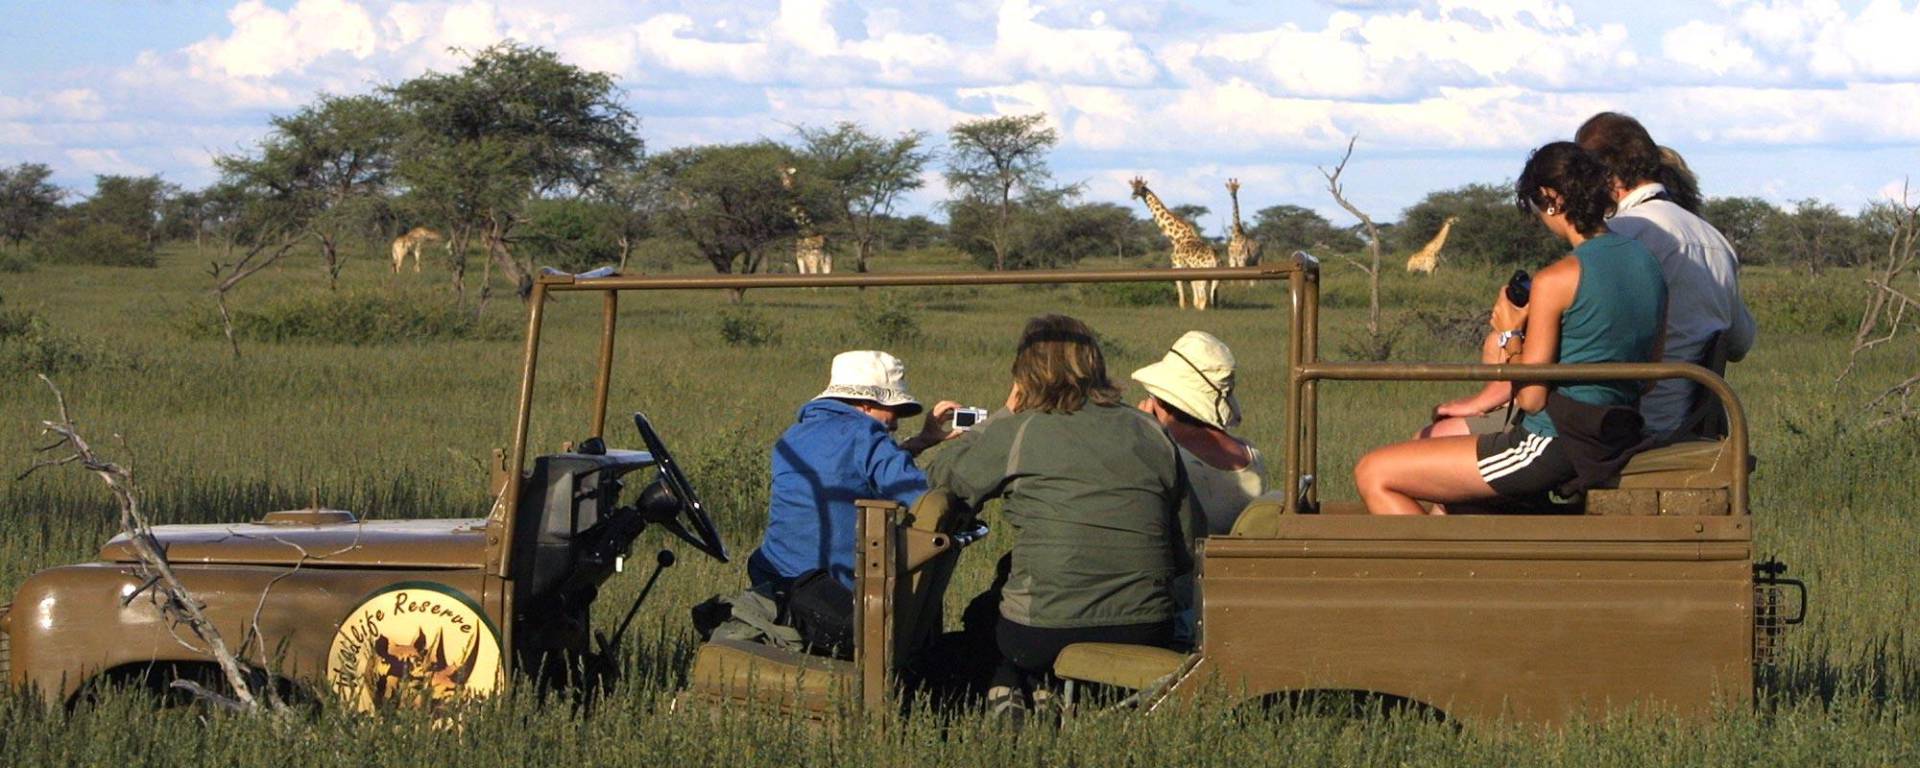 Giraffenbeobachtung auf einer Kuzikus Pirschfahrt